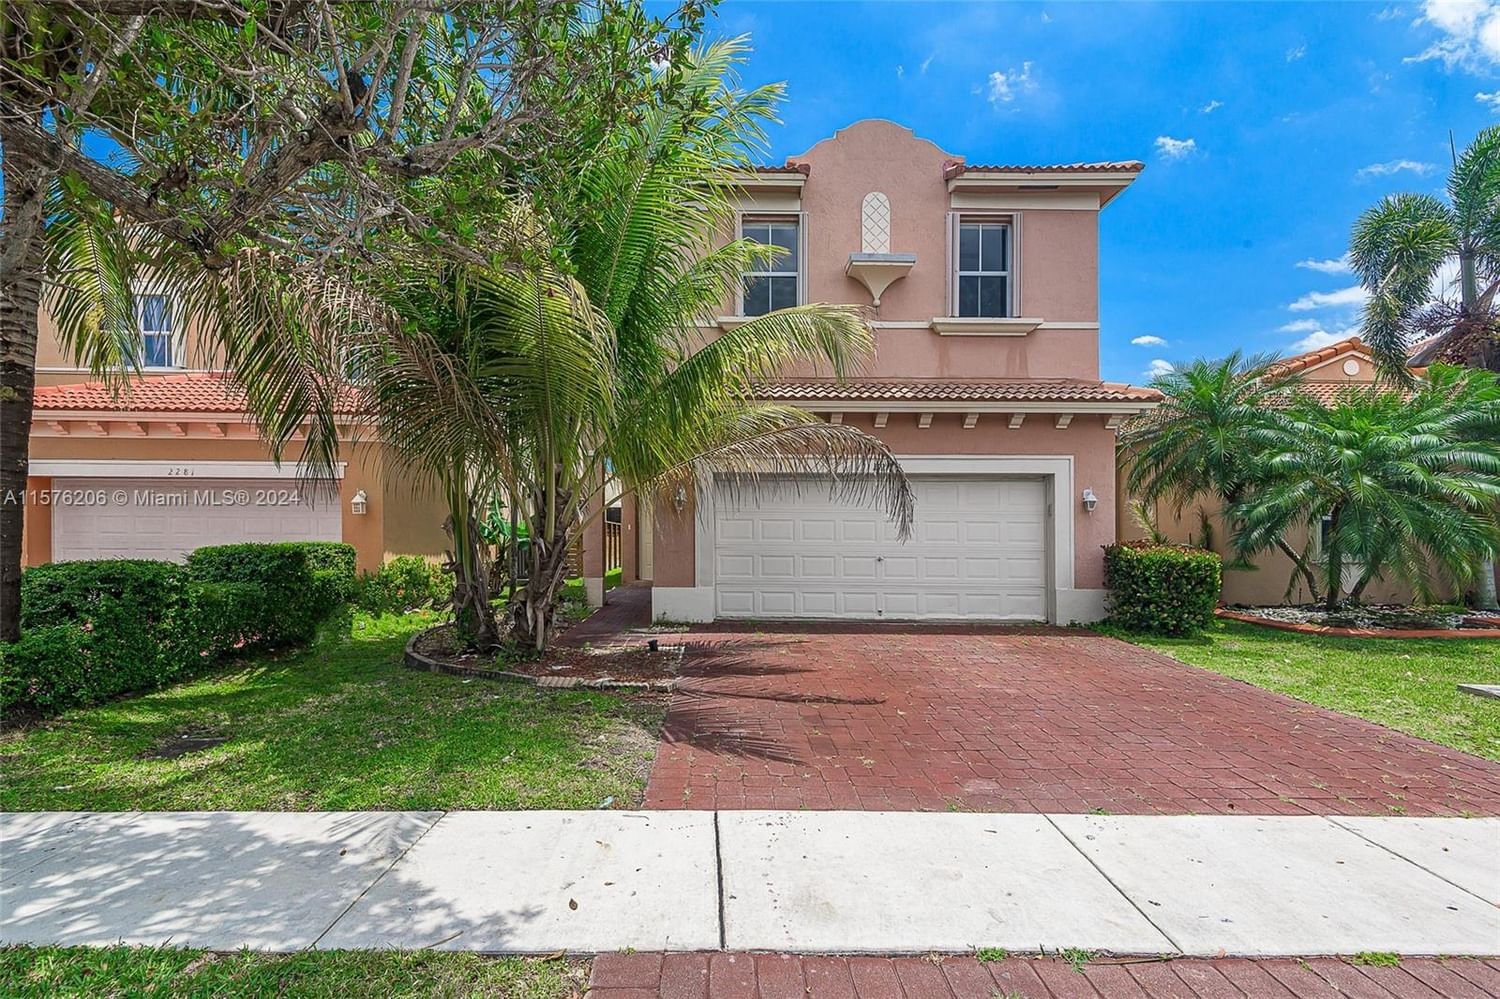 Real estate property located at 2271 37th Ter, Miami-Dade County, PORTOFINO BAY, Homestead, FL